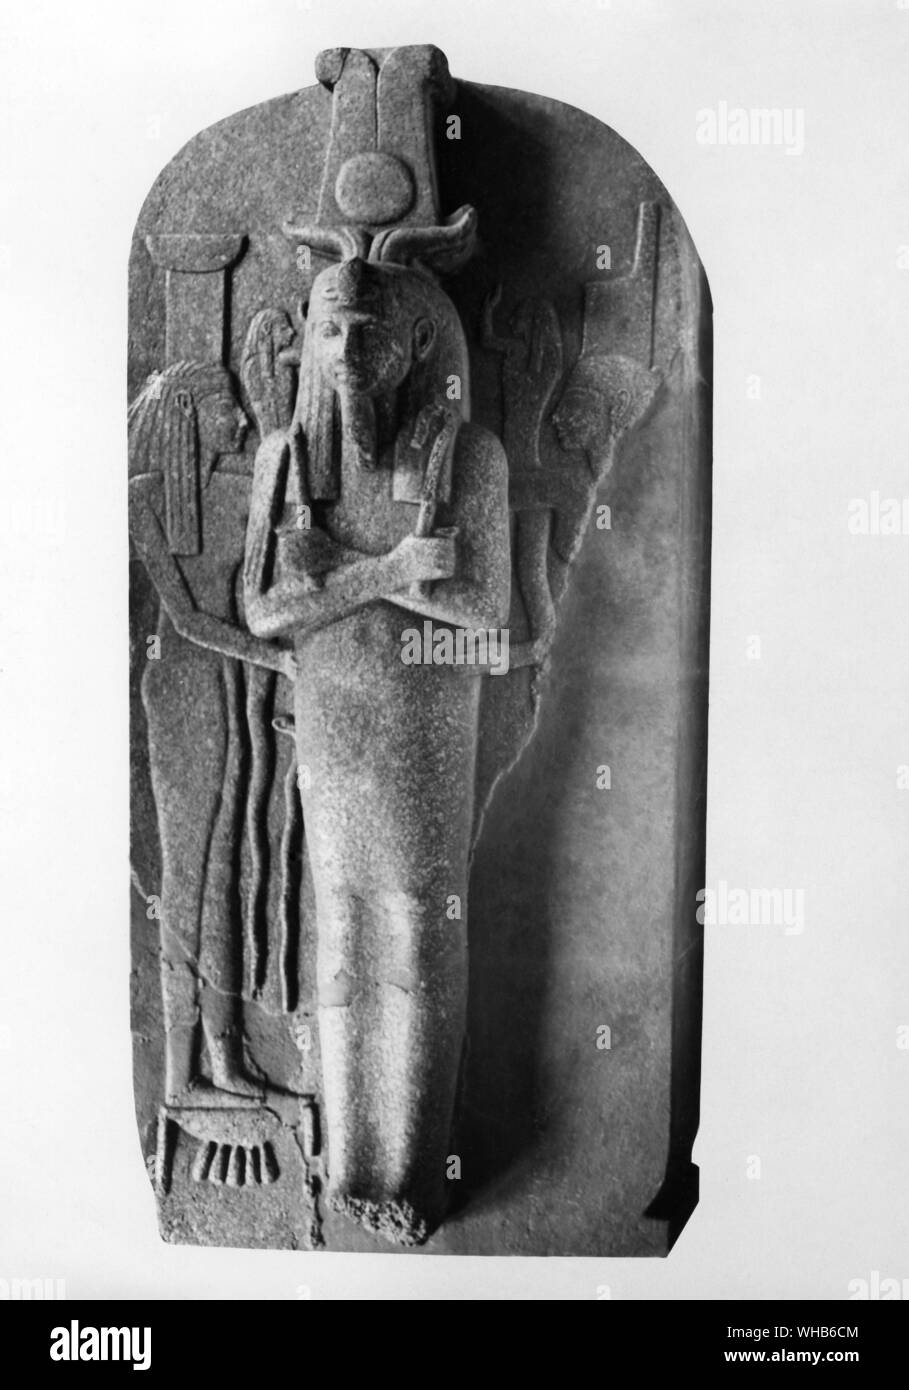 Deckel des Granit Sarg von Ramses III. Ramses III. wird dargestellt als der Gott Osiris das Göttliche regalia Holding und wird von der Göttin Nephthys und Neith 20. Dynastie, 1200 - 1090 v. Chr. neue Königreich teilgenommen. Usimare (auch Ramses Ramses III. und Ramses geschrieben) war der zweite Pharao der 20. Dynastie und gilt als der letzte große zu Neuen Reich König werden in einem wesentlichen Autorität über Ägypten auszuüben.. Stockfoto